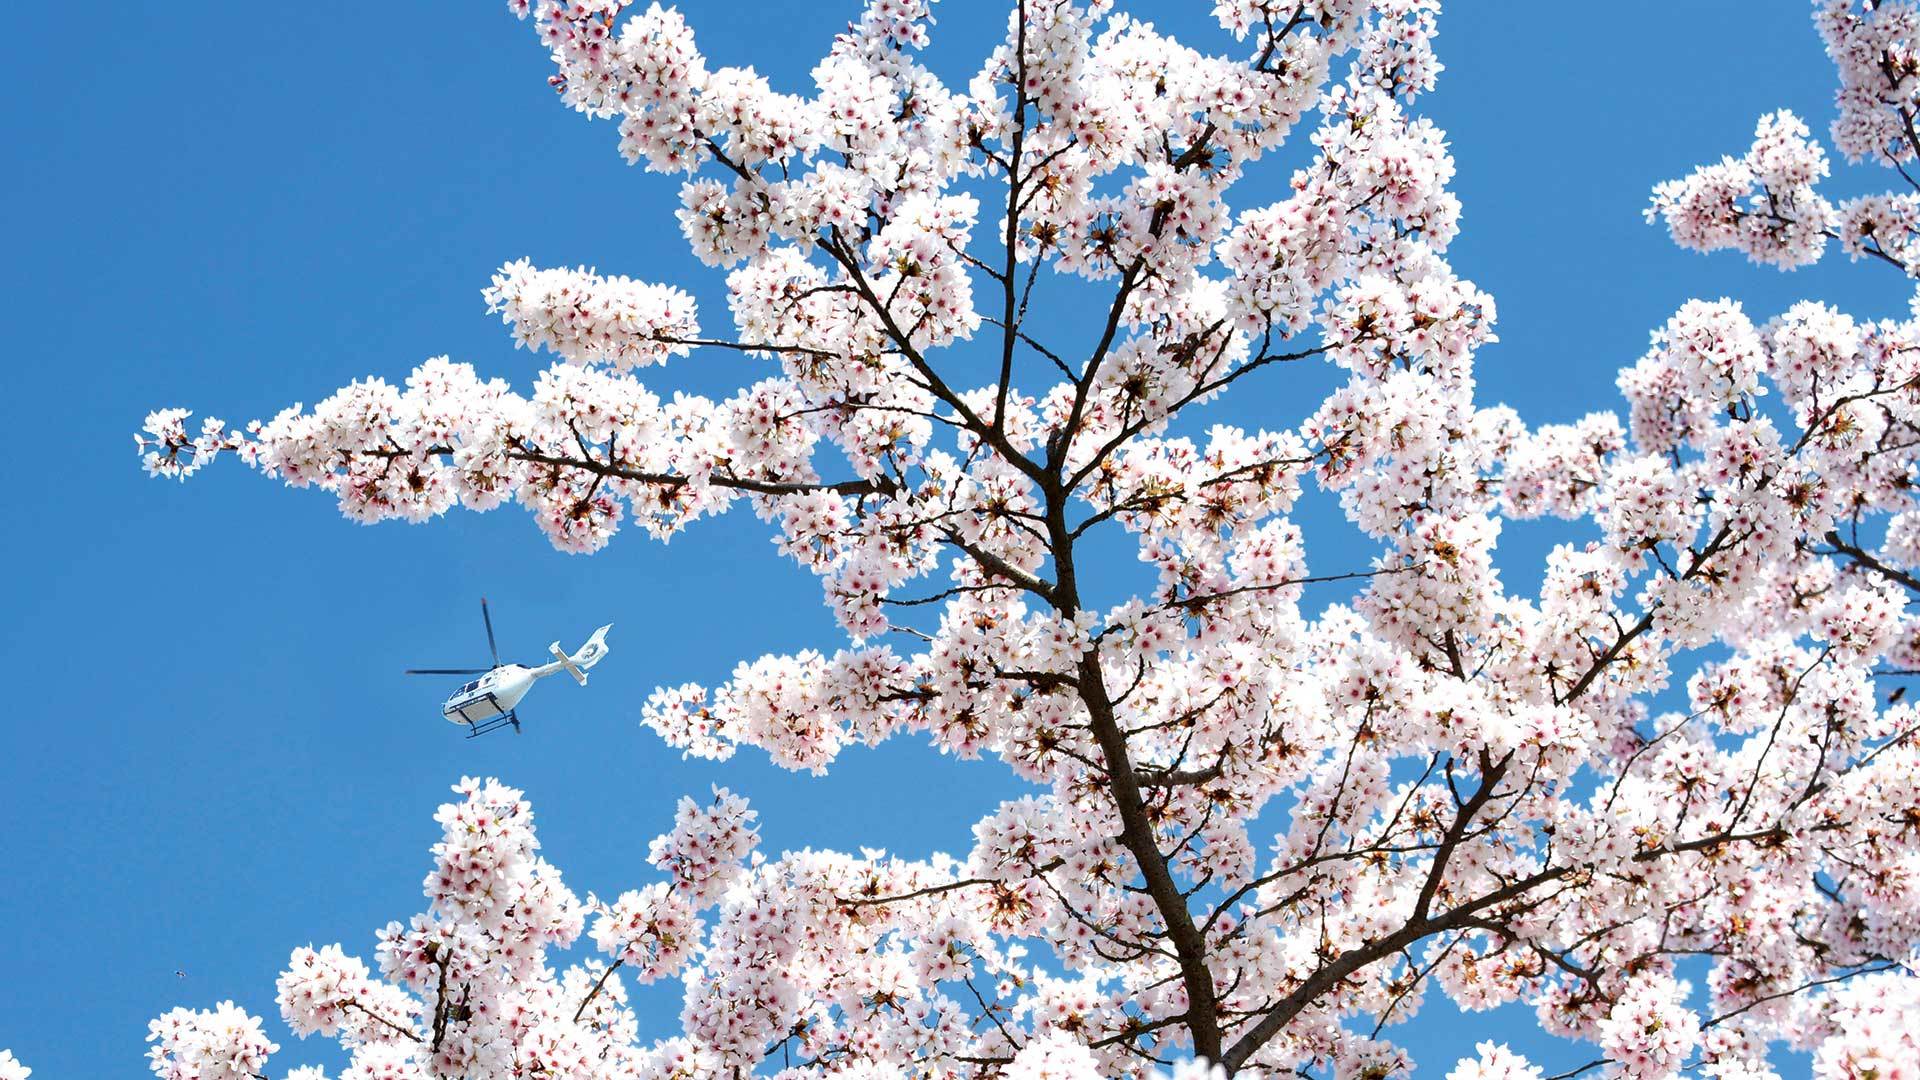 Shooting Covid raconter Mulhouse en temps de pandémie - Cerisiers en fleurs